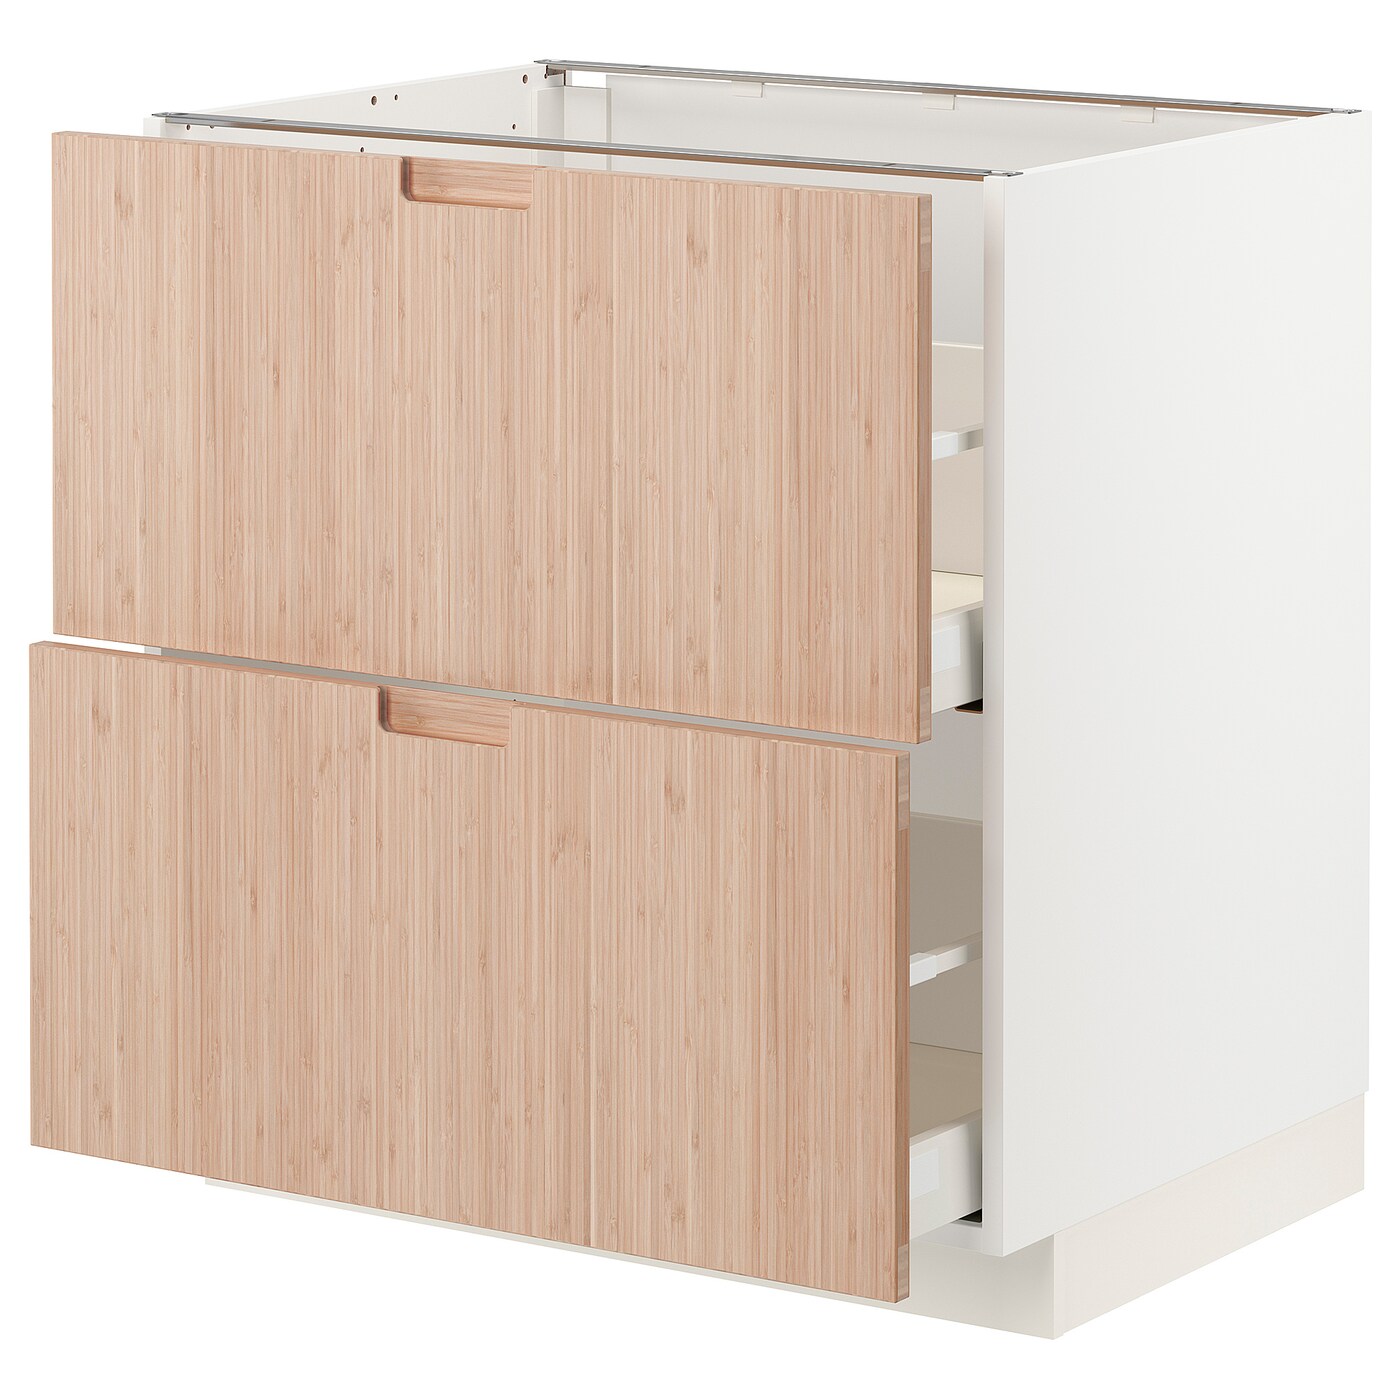 Напольный кухонный шкаф  - IKEA METOD MAXIMERA, 88x62x80см, белый/светлый бамбук, МЕТОД МАКСИМЕРА ИКЕА